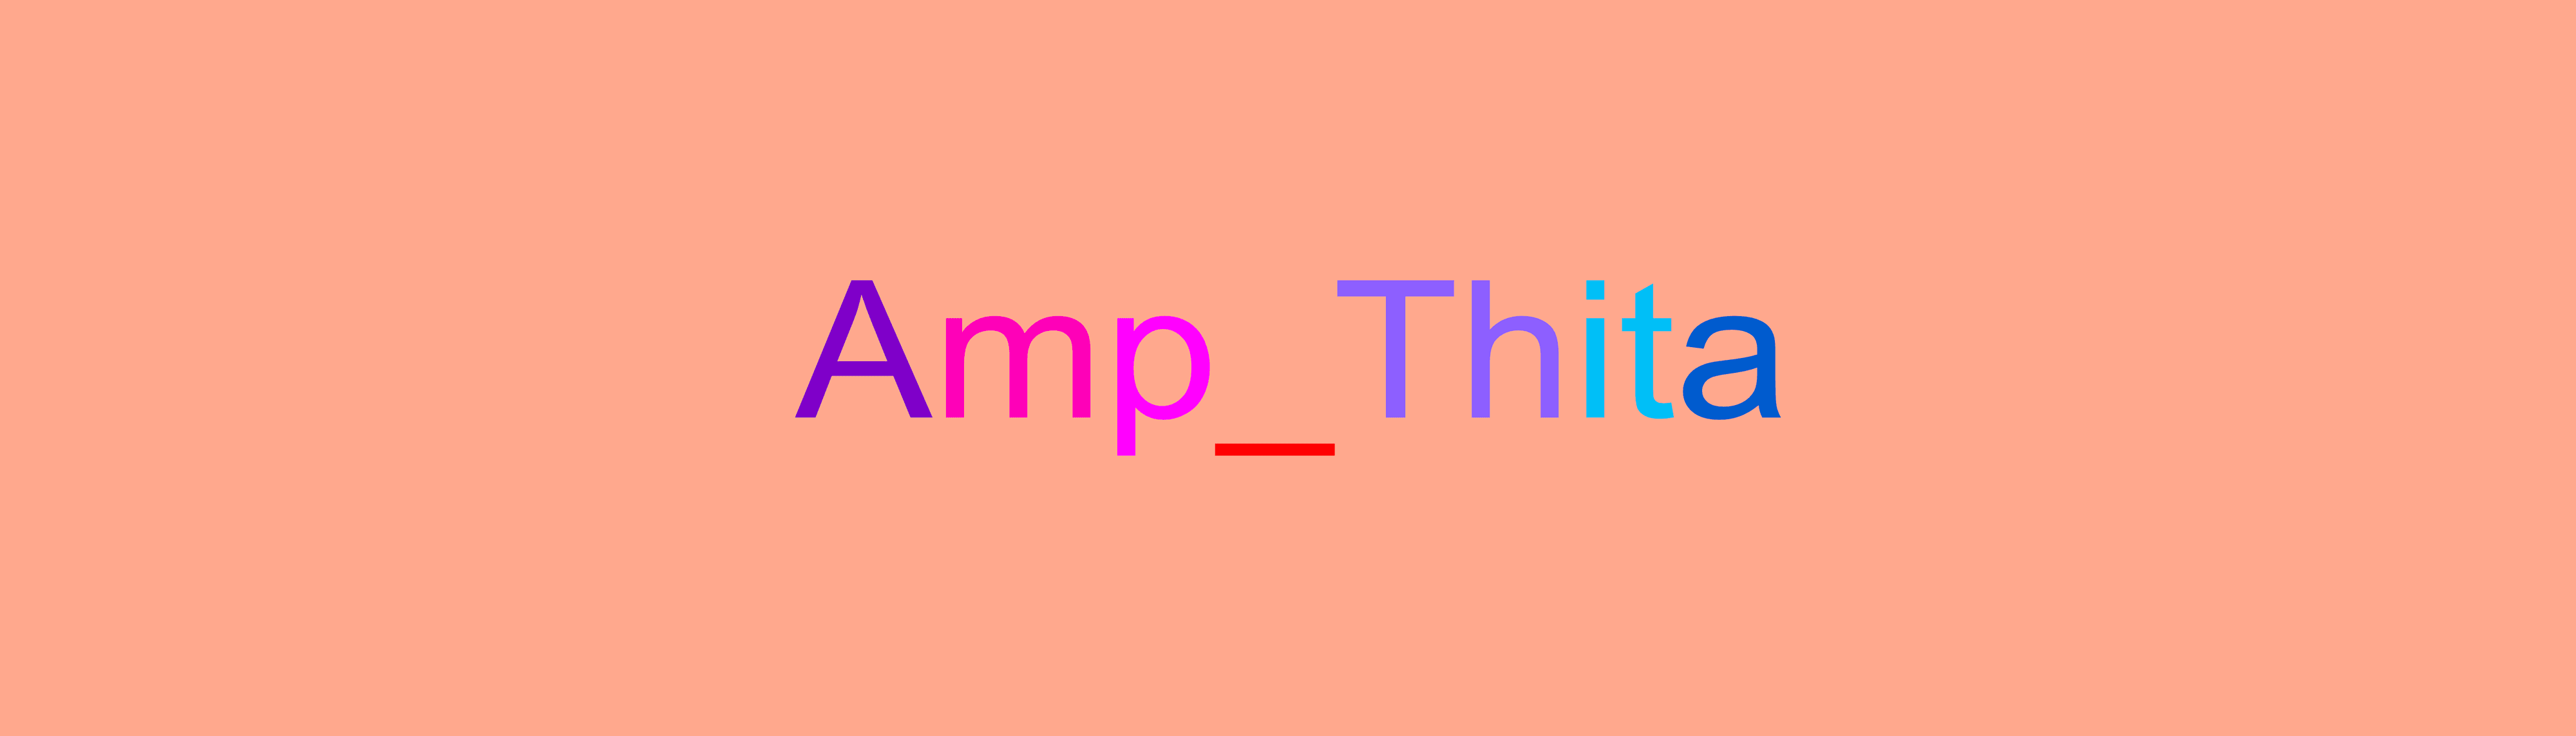 Amp_Thita 横幅